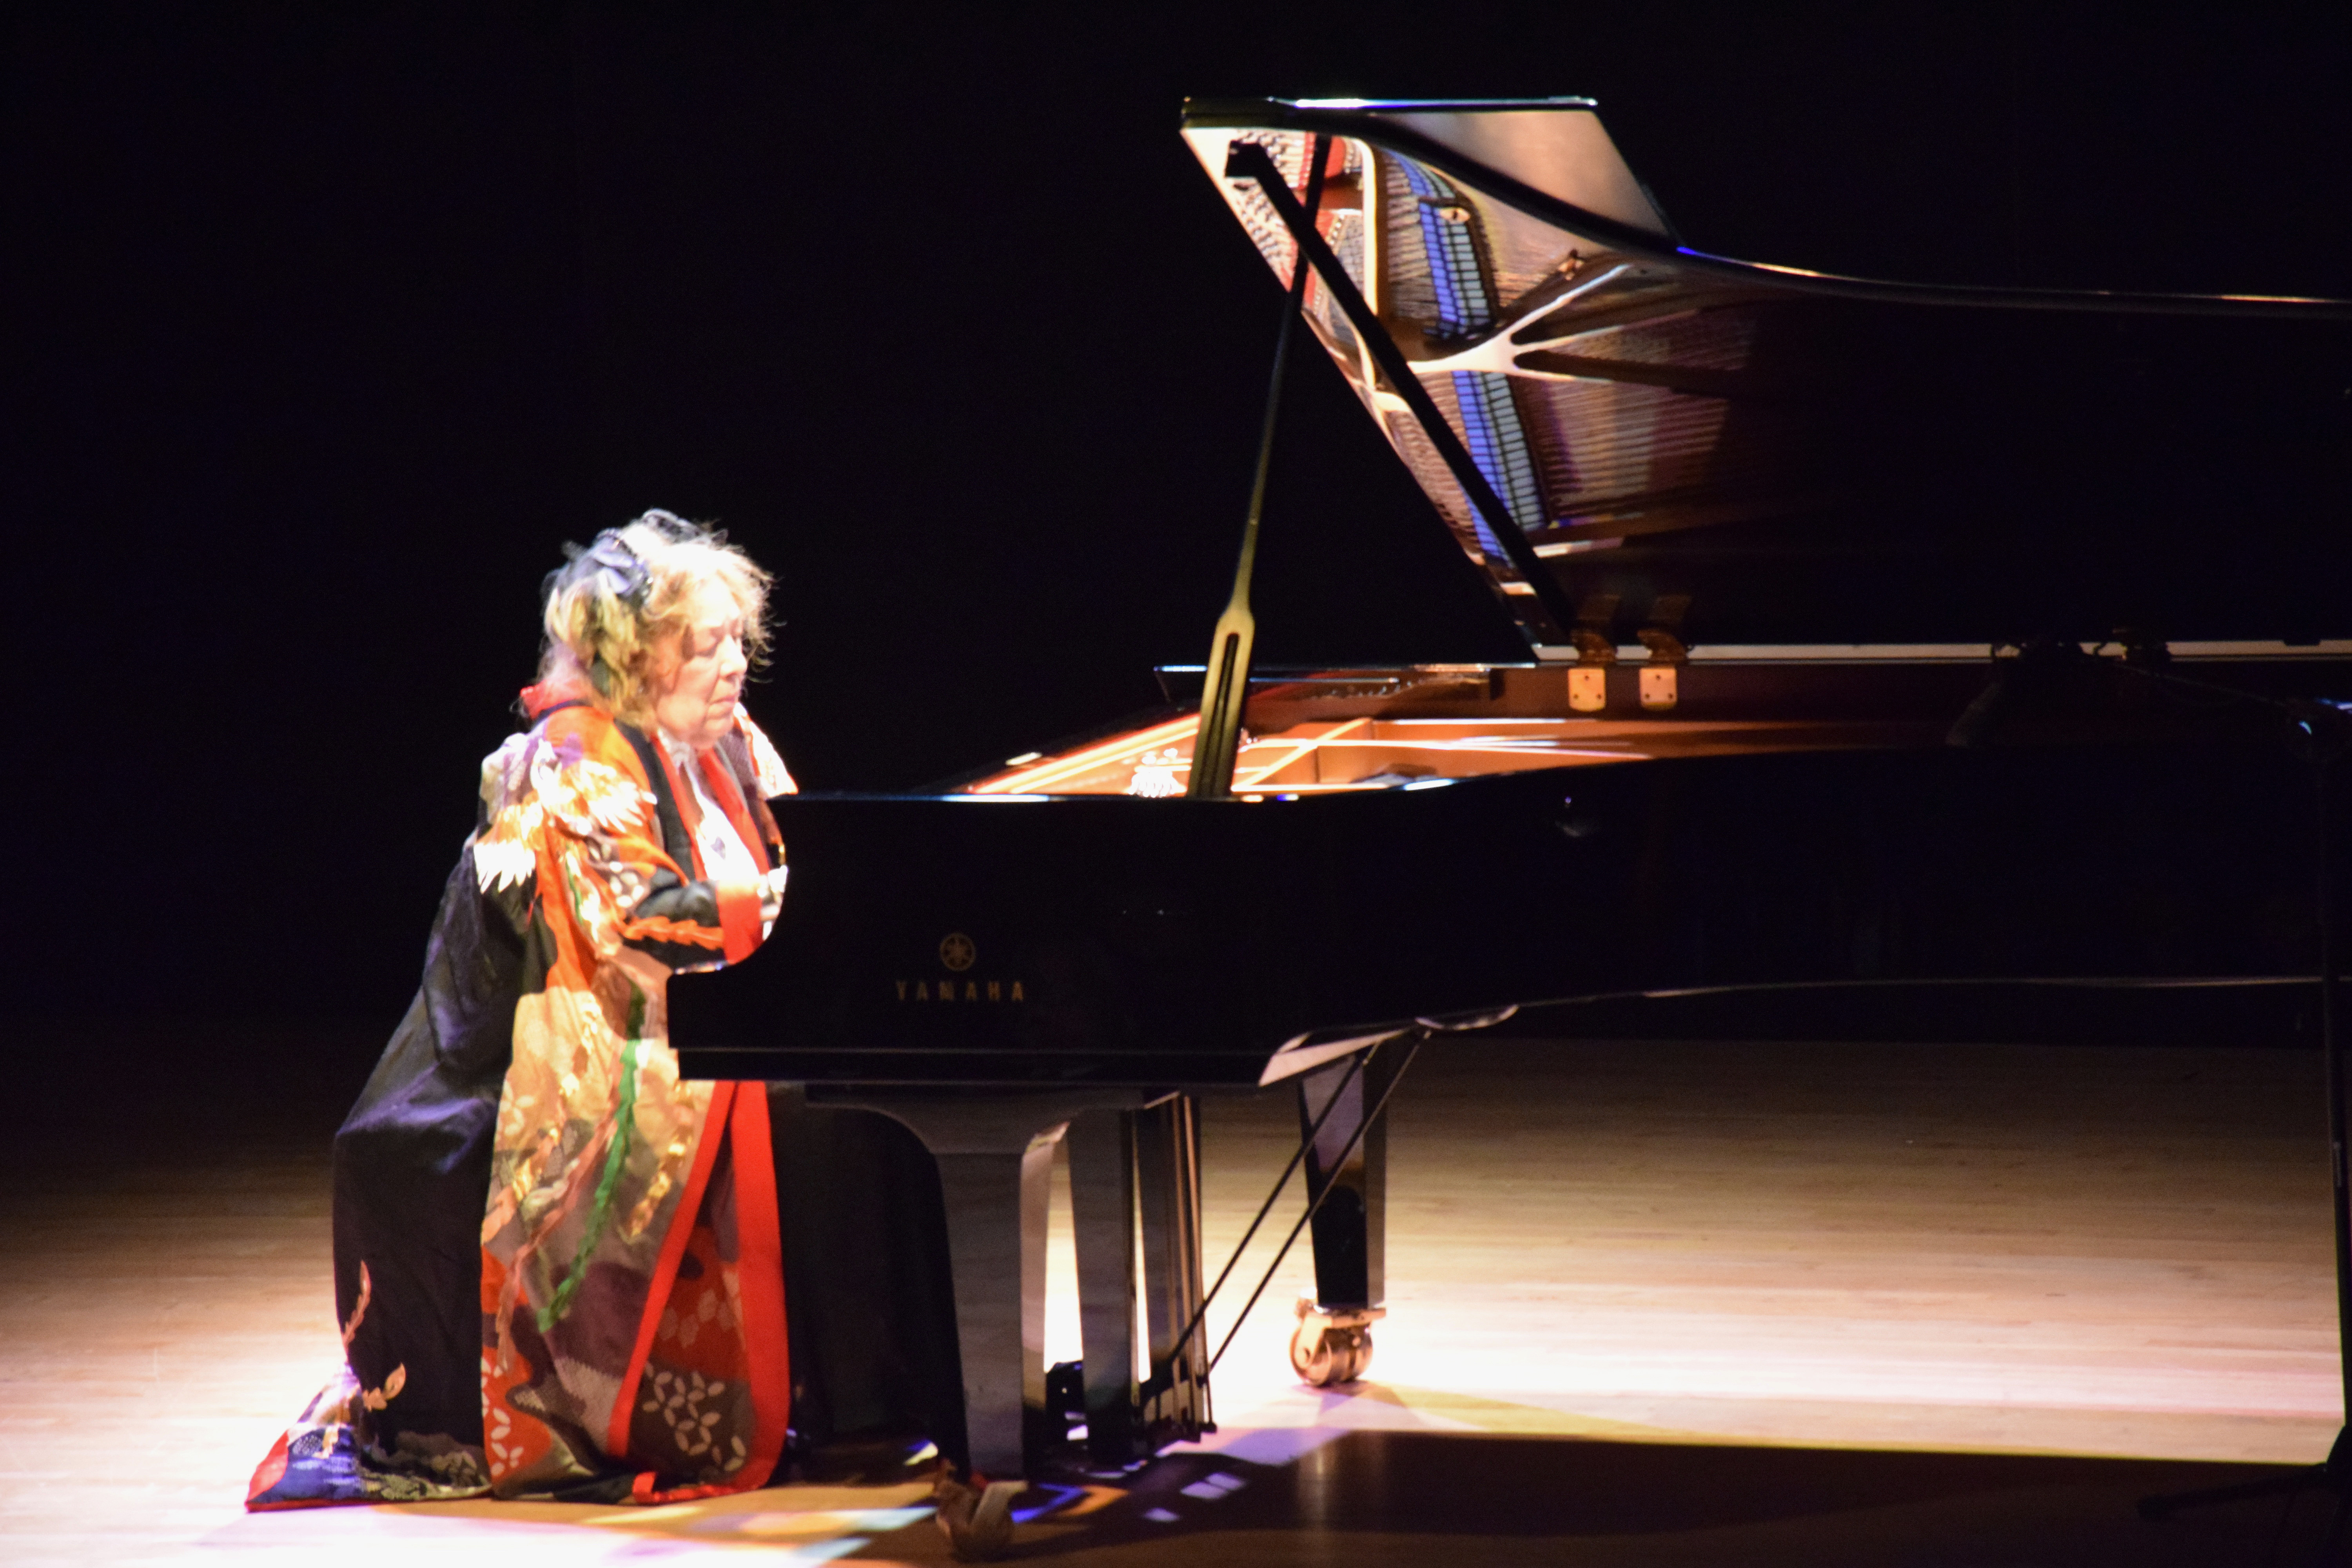 ピアニストのフジコ・ヘミングさん死去、92歳 「奇蹟のカンパネラ」 | ロイター